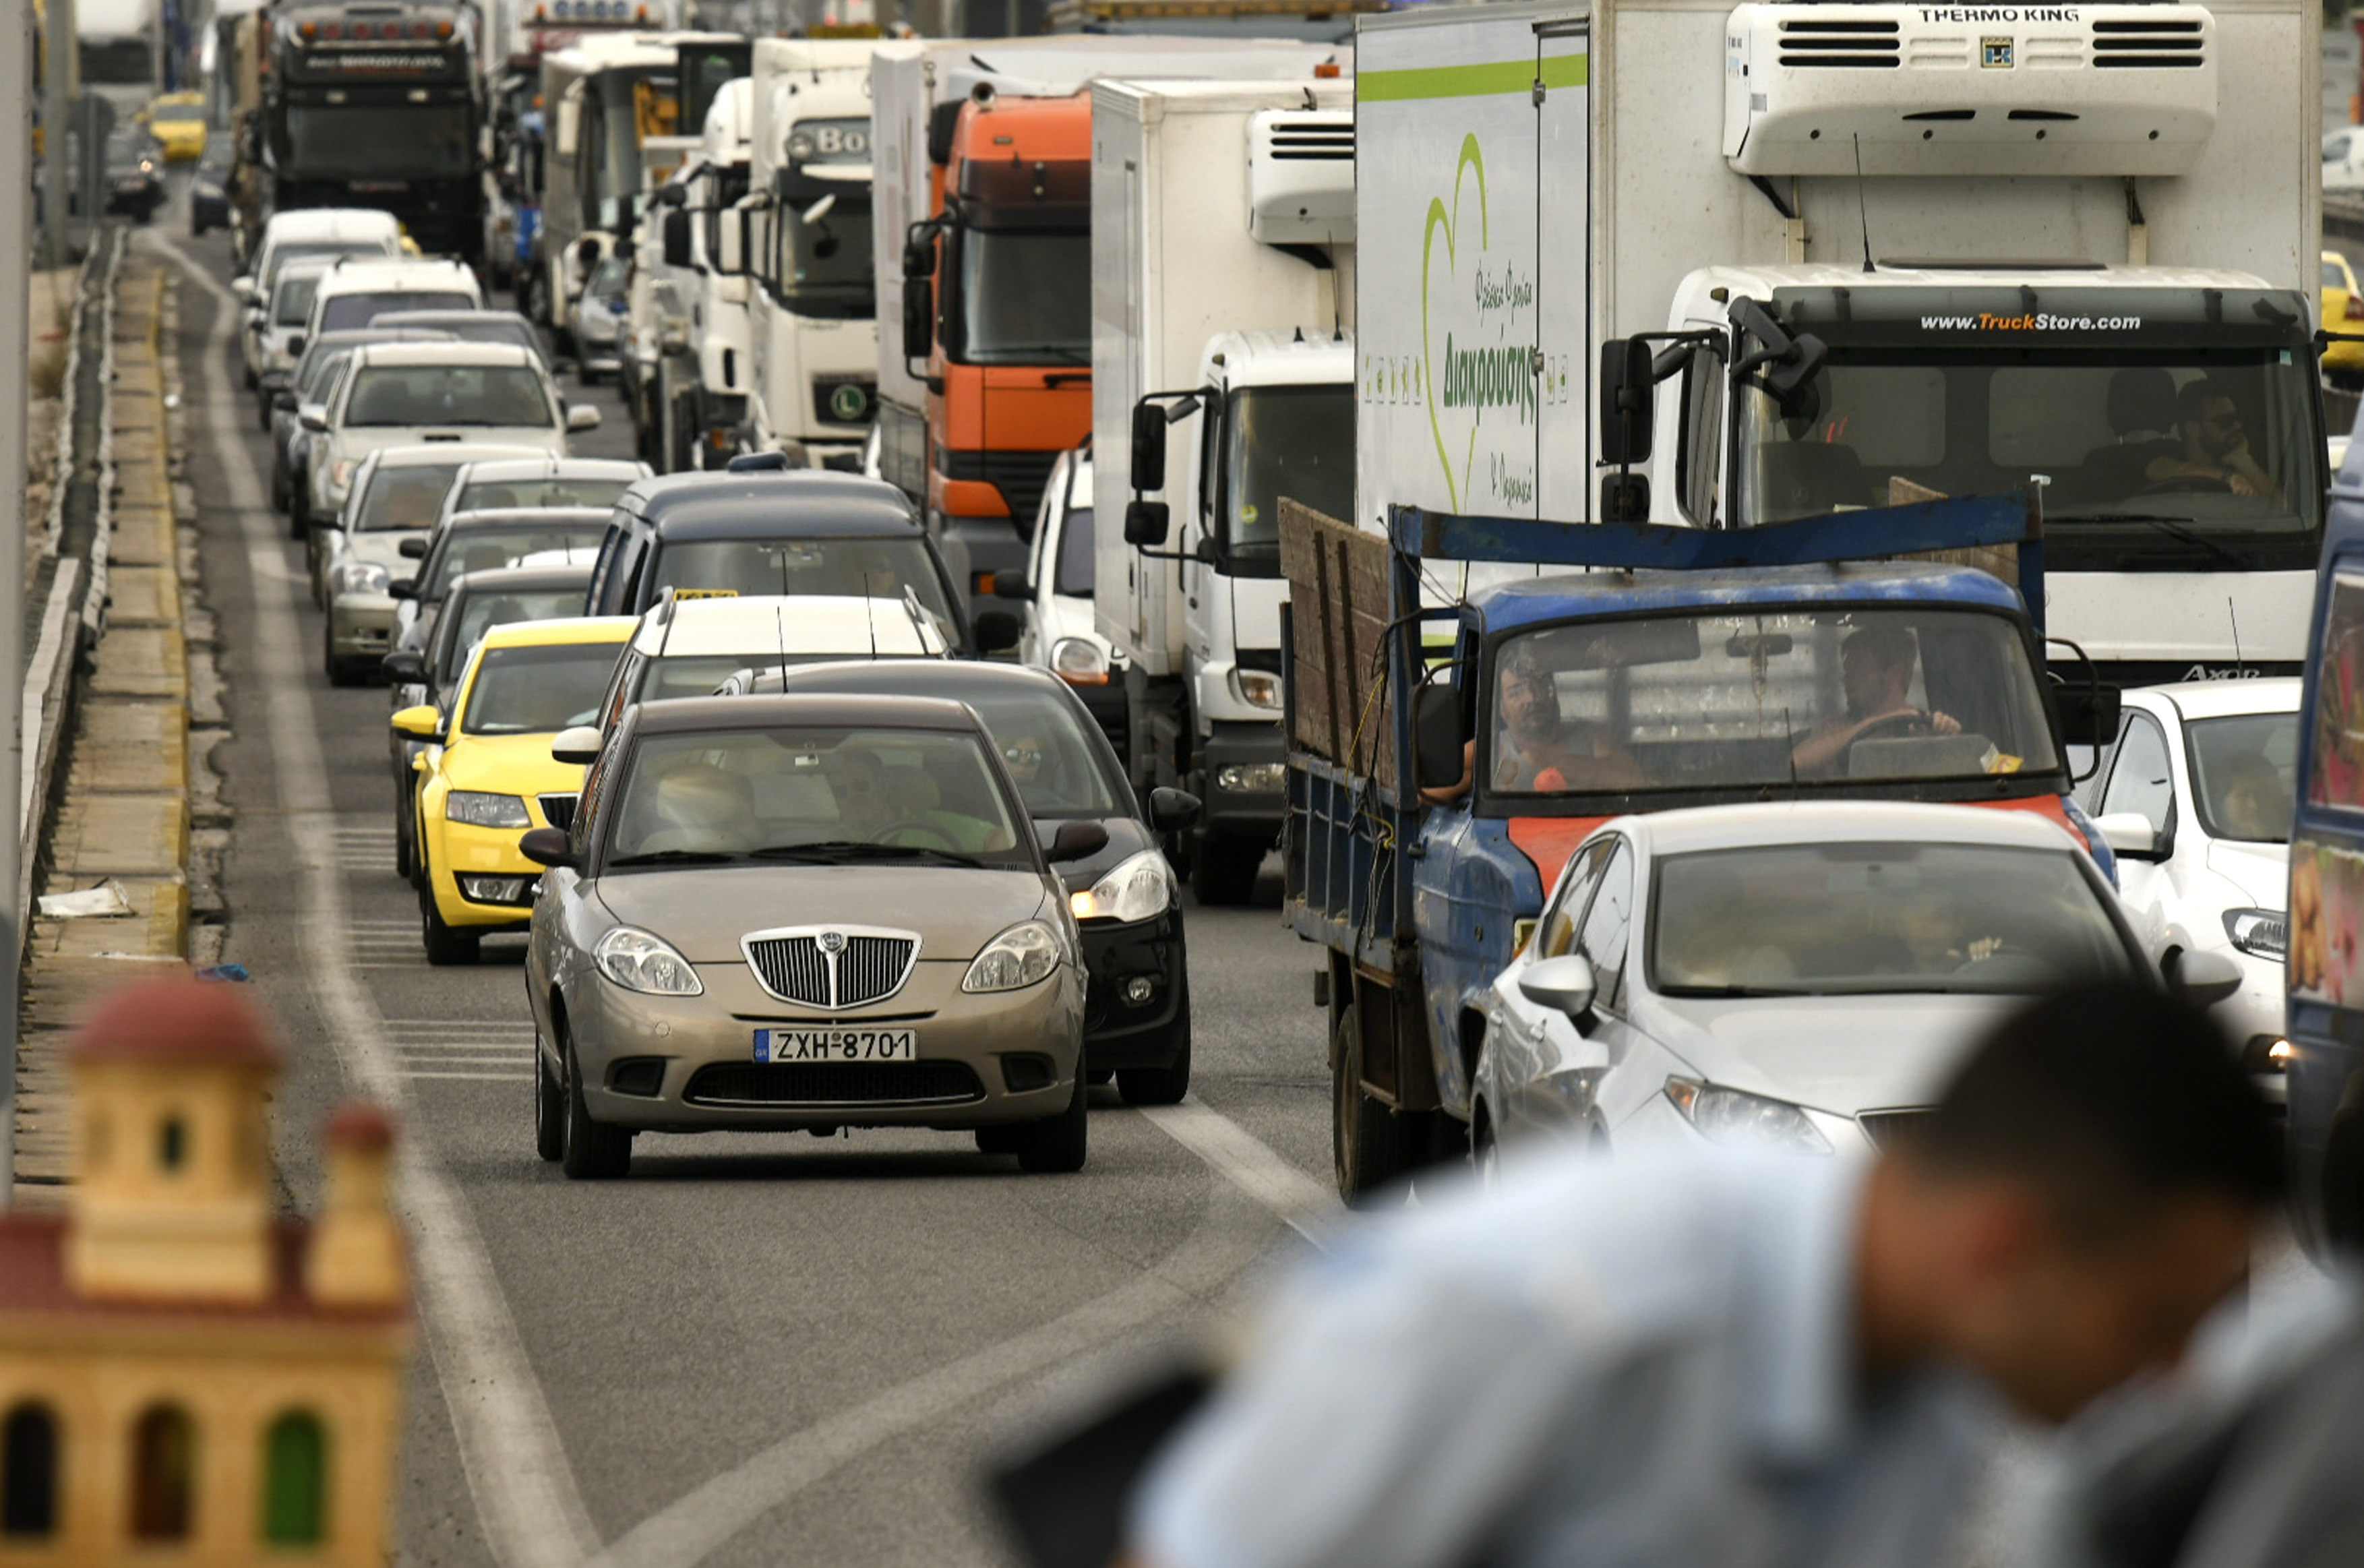 Διακοπή κυκλοφορίας στην λεωφόρο Κορωπίου λόγω τροχαίου